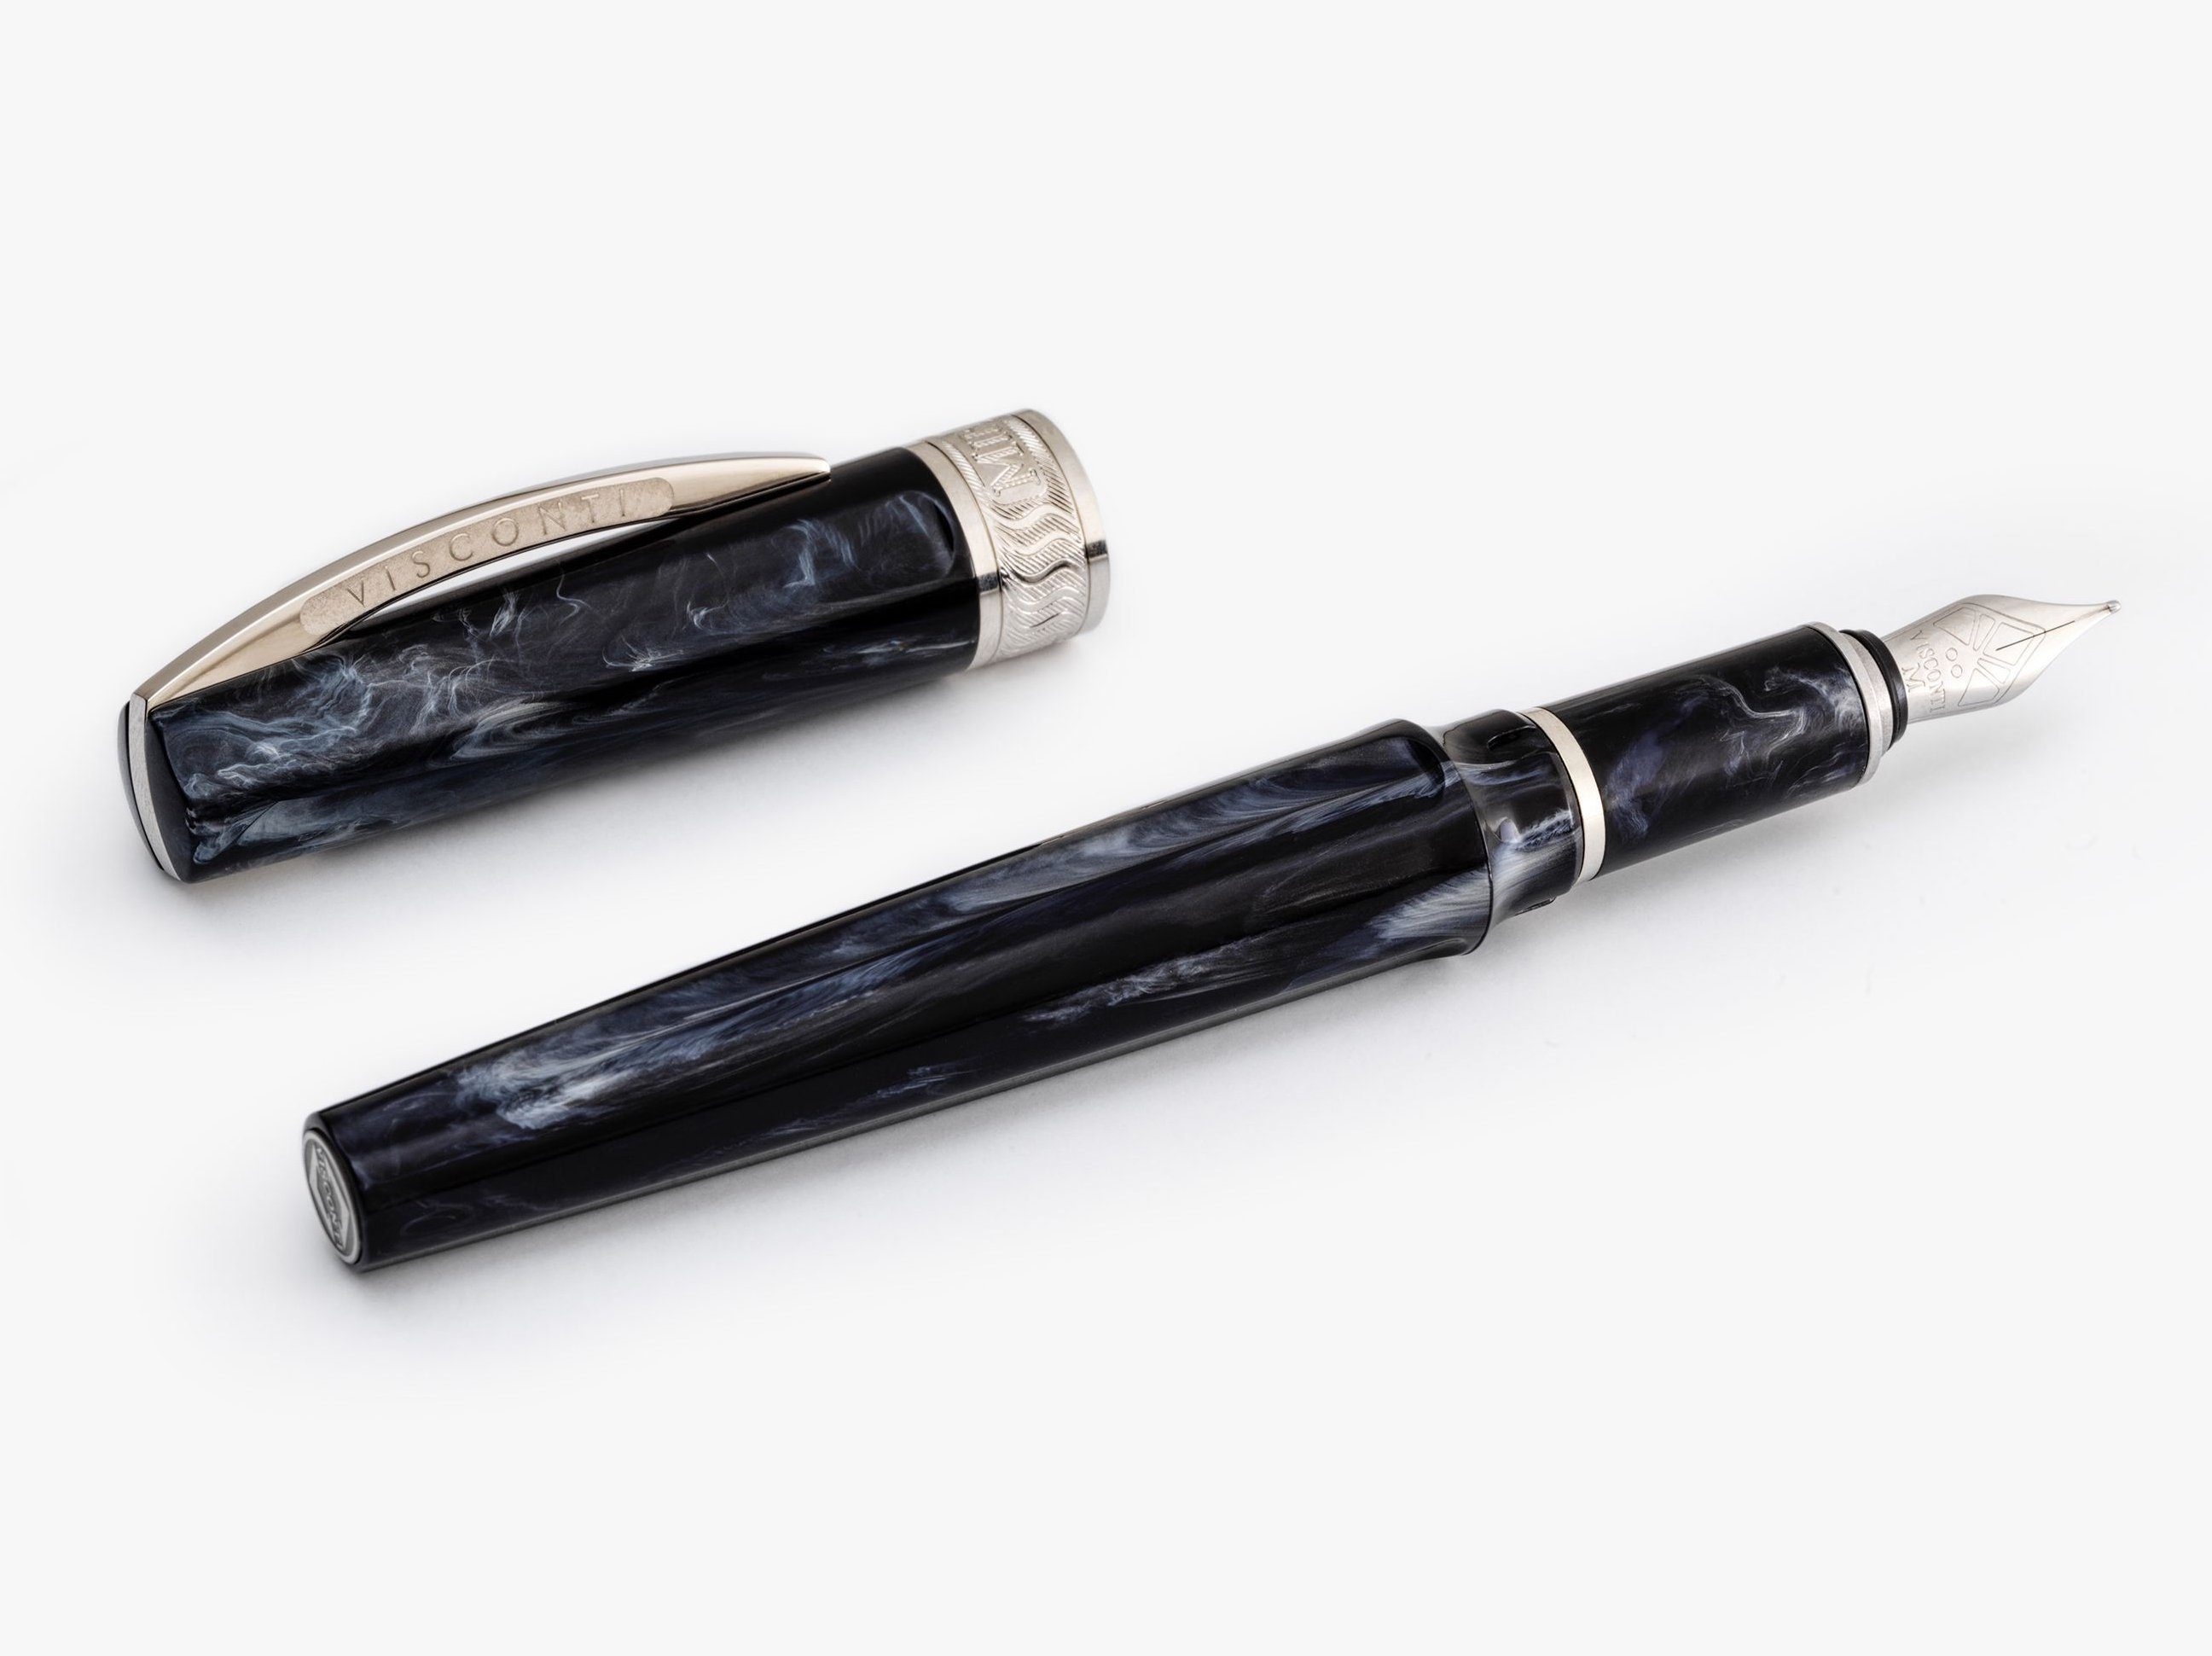 Visconti Füllfederhalter Füllfederhalter Visconti Mirage Black Fountain Pen verschiedene Feders, (kein Set) Schwarz M